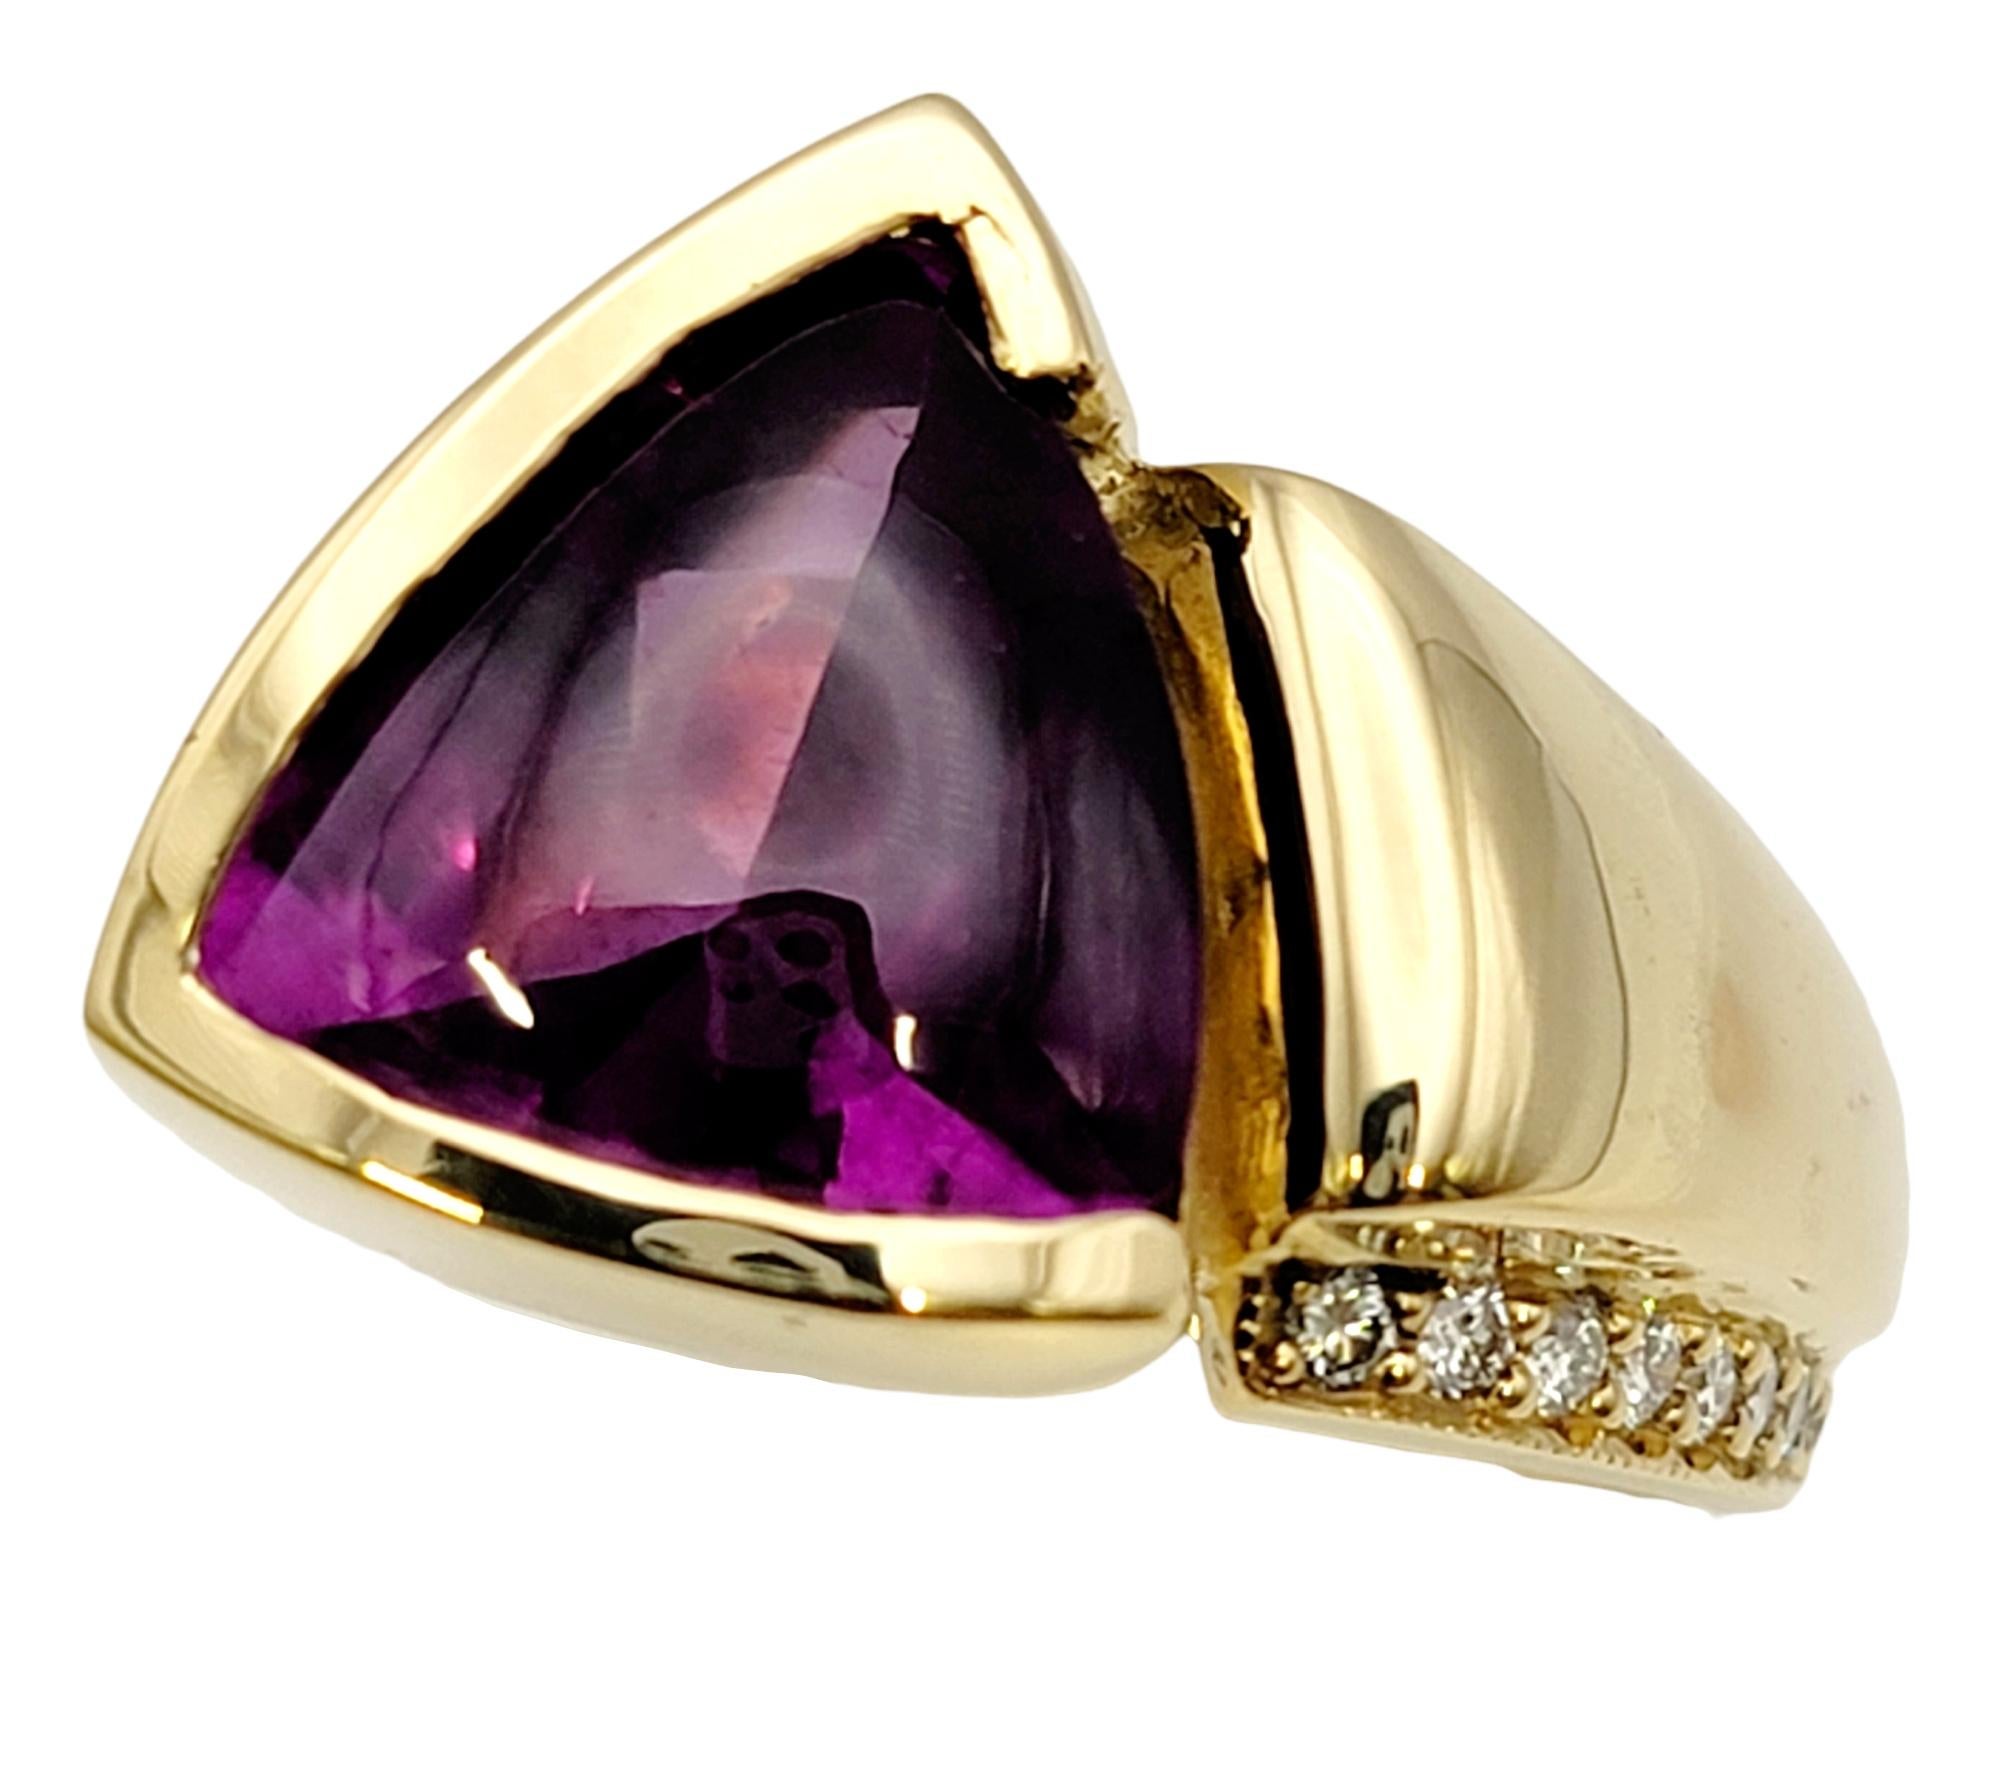 Ringgröße: 6

Kühnes und modernes Schmuckstück mit einem großen dreieckigen Rhodolith-Granat und weißen Naturdiamanten als Akzent. Dieses große Stück hat ein asymmetrisches Design aus poliertem 18-karätigem Gelbgold. Der helle, rötlich-violette